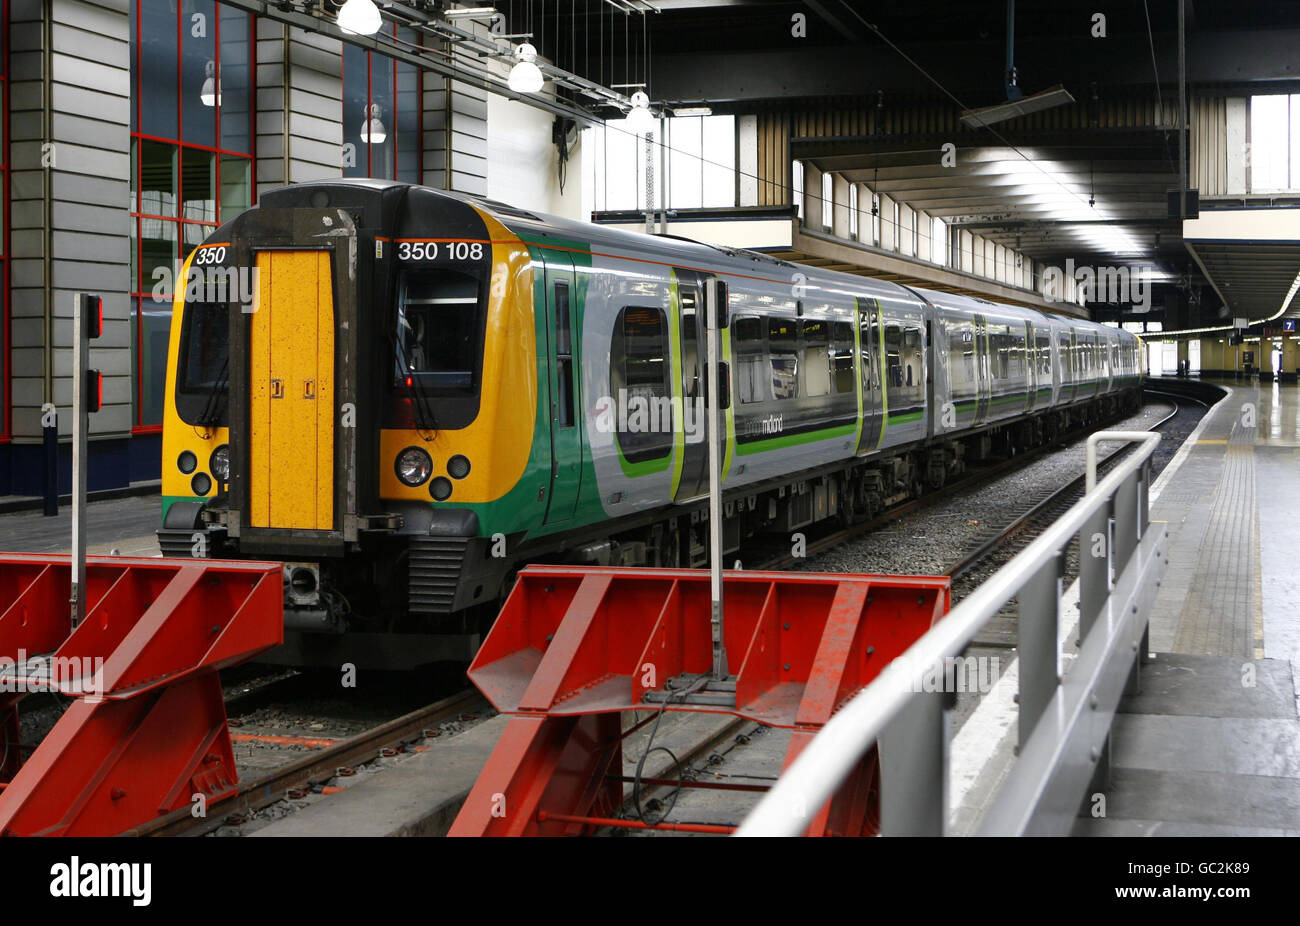 London Midland Trains annullato. Un treno London Midland è inattivo su una piattaforma ferroviaria alla stazione di Euston a Londra. Foto Stock